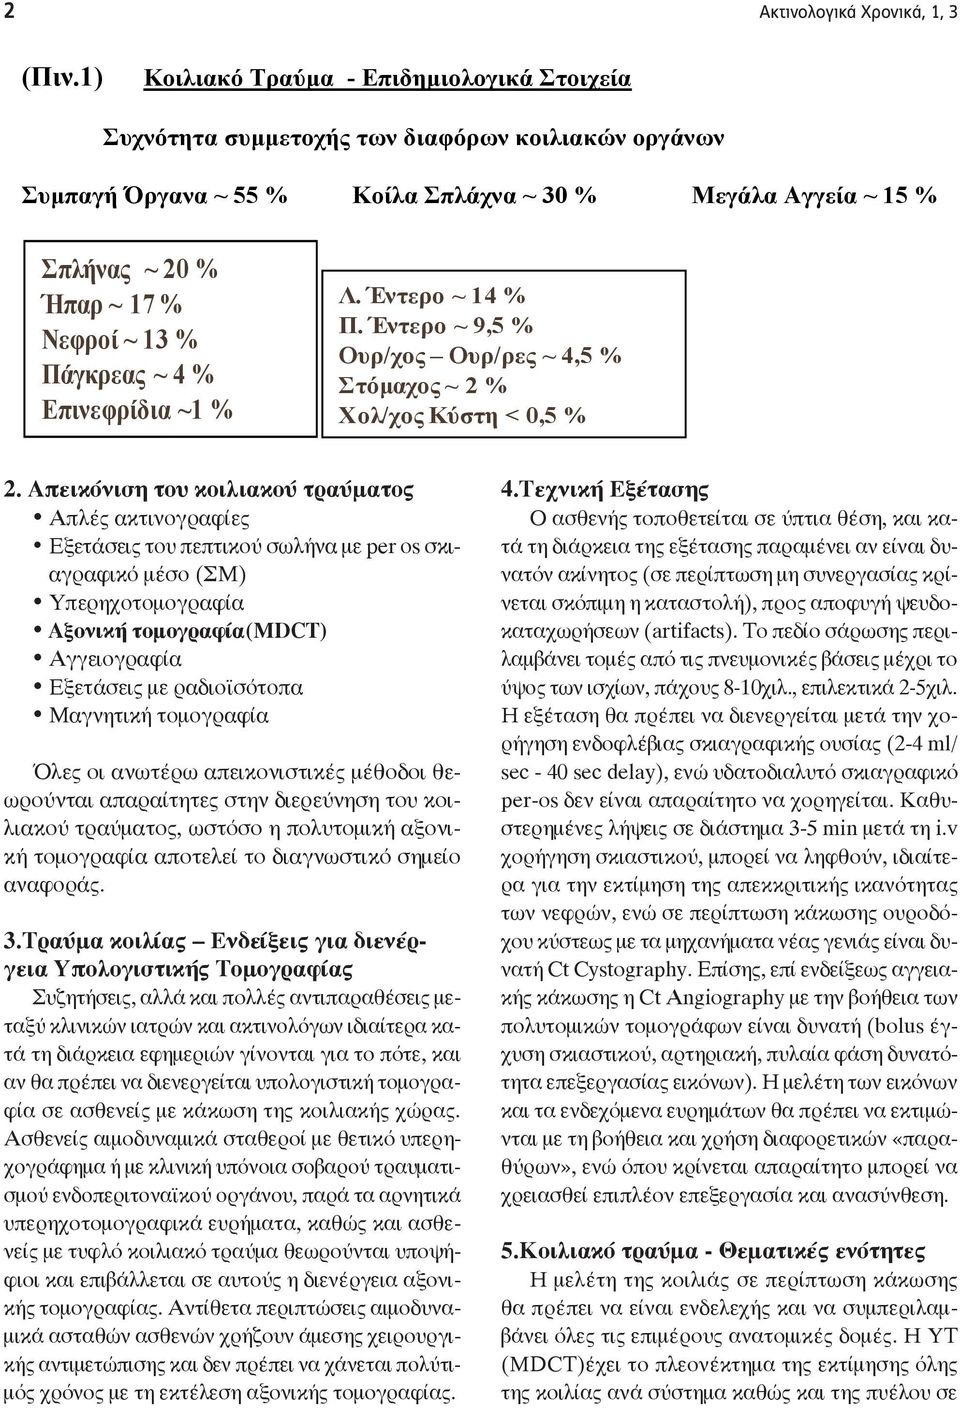 Πάγκπεαρ ~ 4 % Επινεθπίδια ~1 % Λ. Ένηεπο ~ 14 % Π. Ένηεπο ~ 9,5 % Οςπ/σορ Οςπ/περ ~ 4,5 % ηόμασορ ~ 2 % Υολ/σορ Κύζηη < 0,5 % 2.